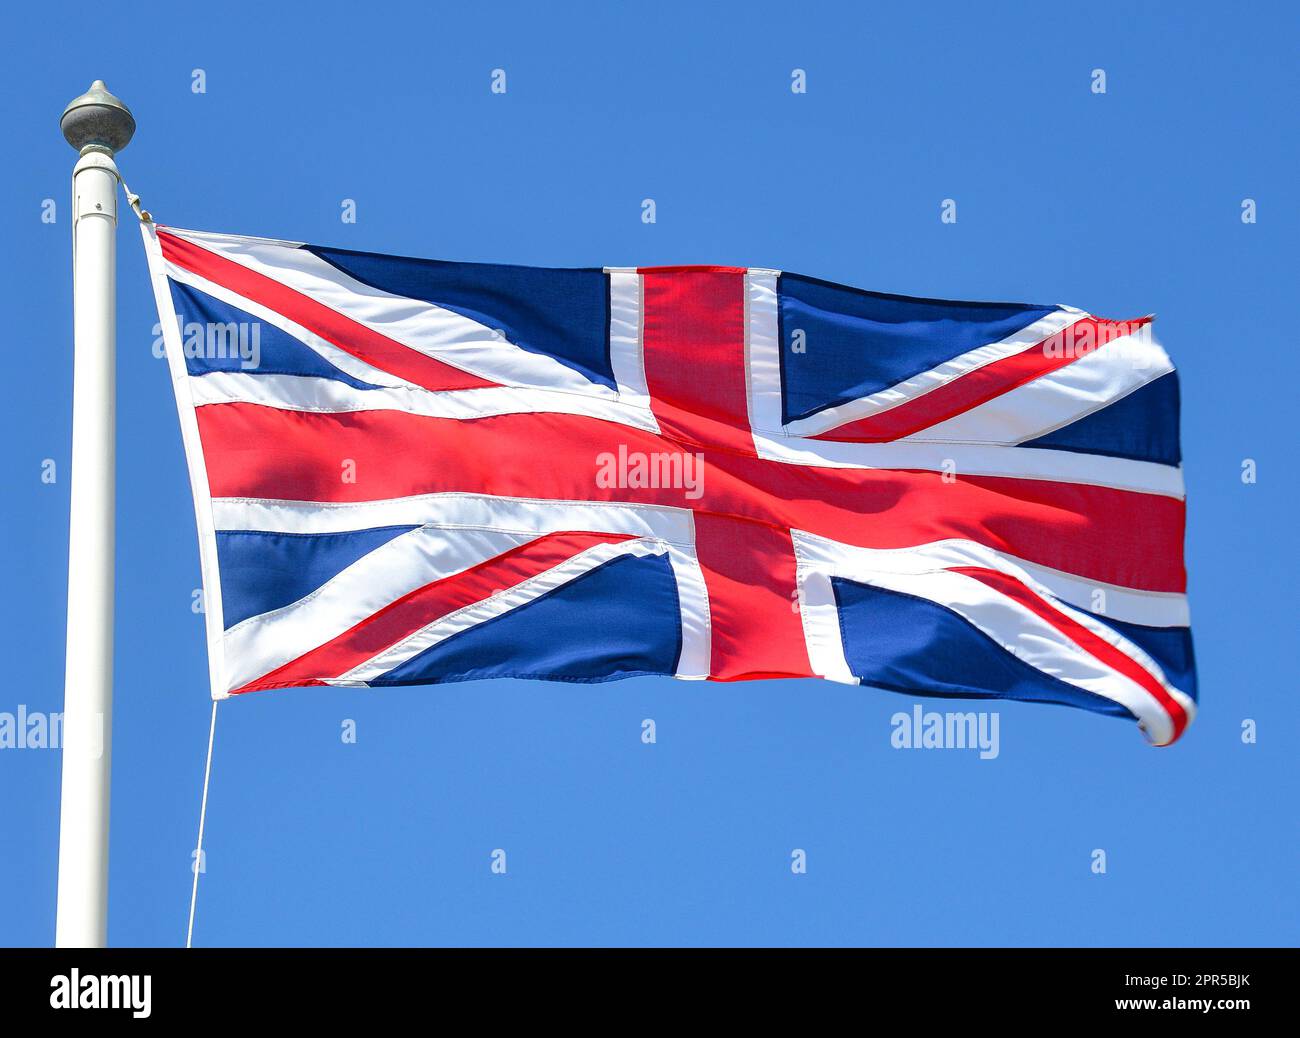 Drapeau Union Jack volant sur le mât, Westminster, Cité de Westminster, Grand Londres, Angleterre, Royaume-Uni Banque D'Images